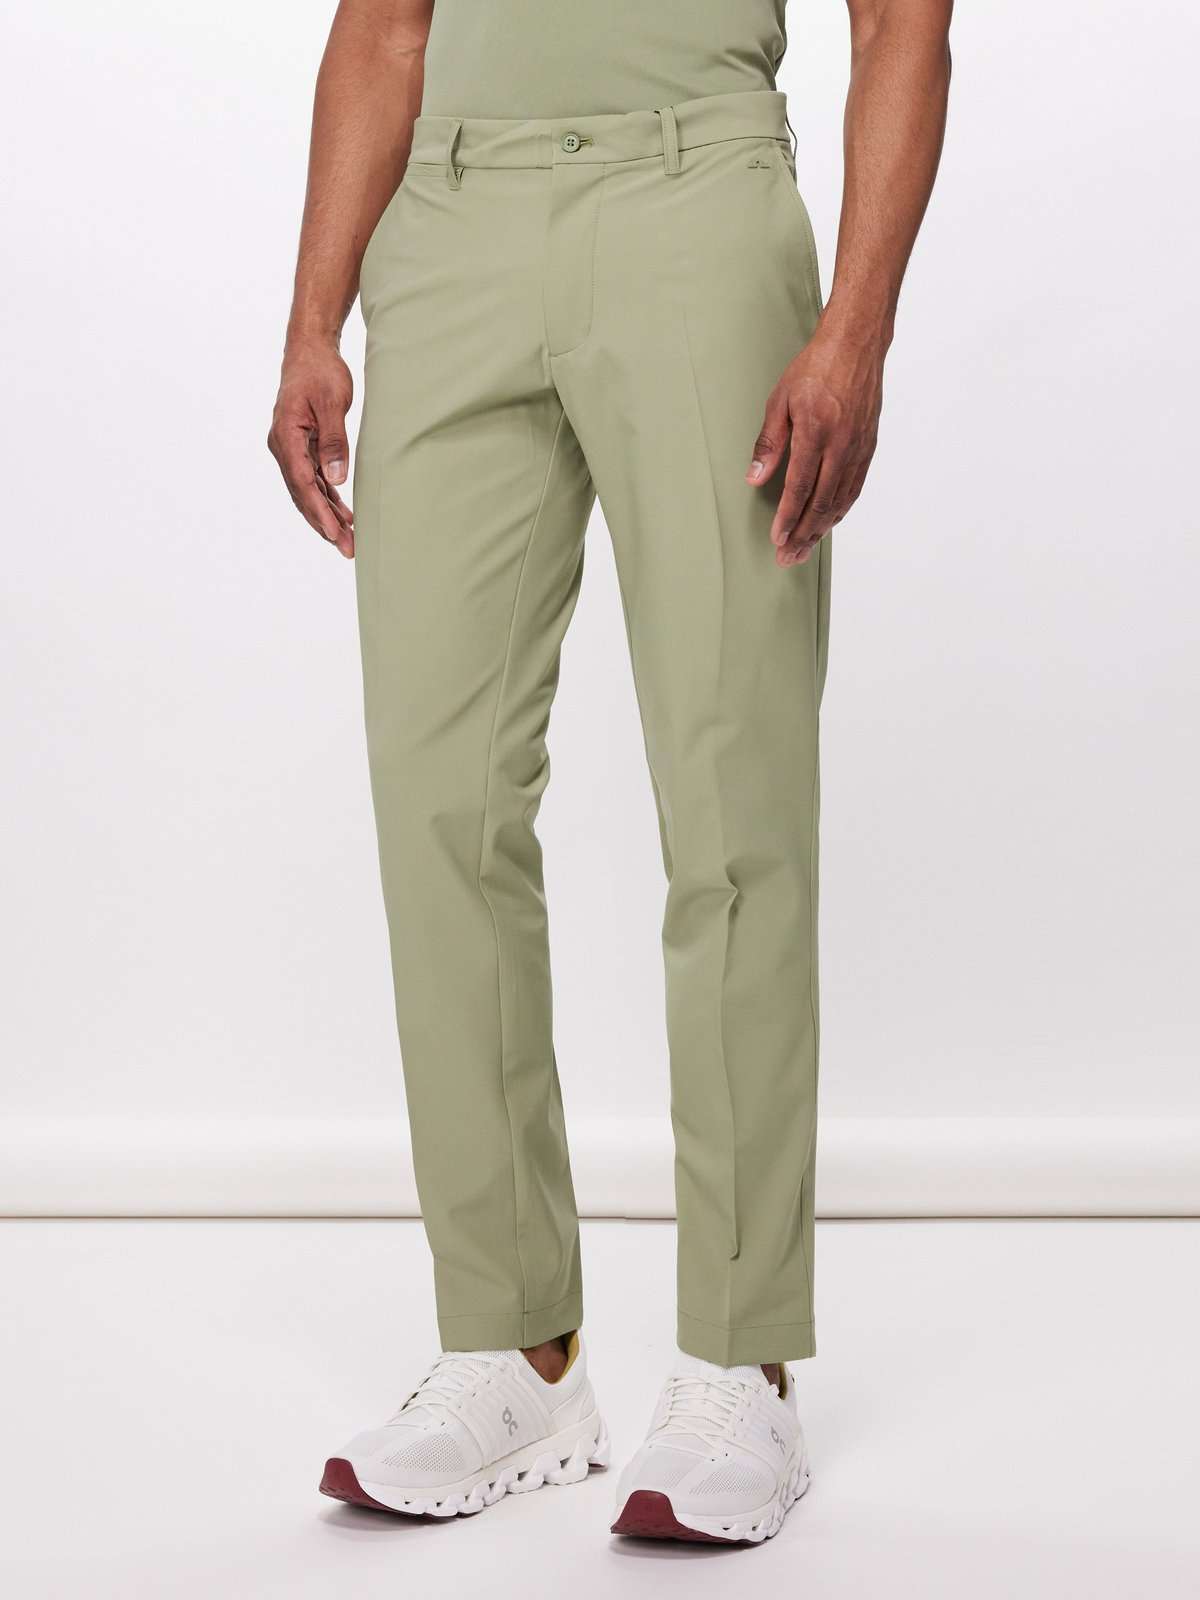 саржевые брюки для гольфа Elott с бляшкой-логотипом